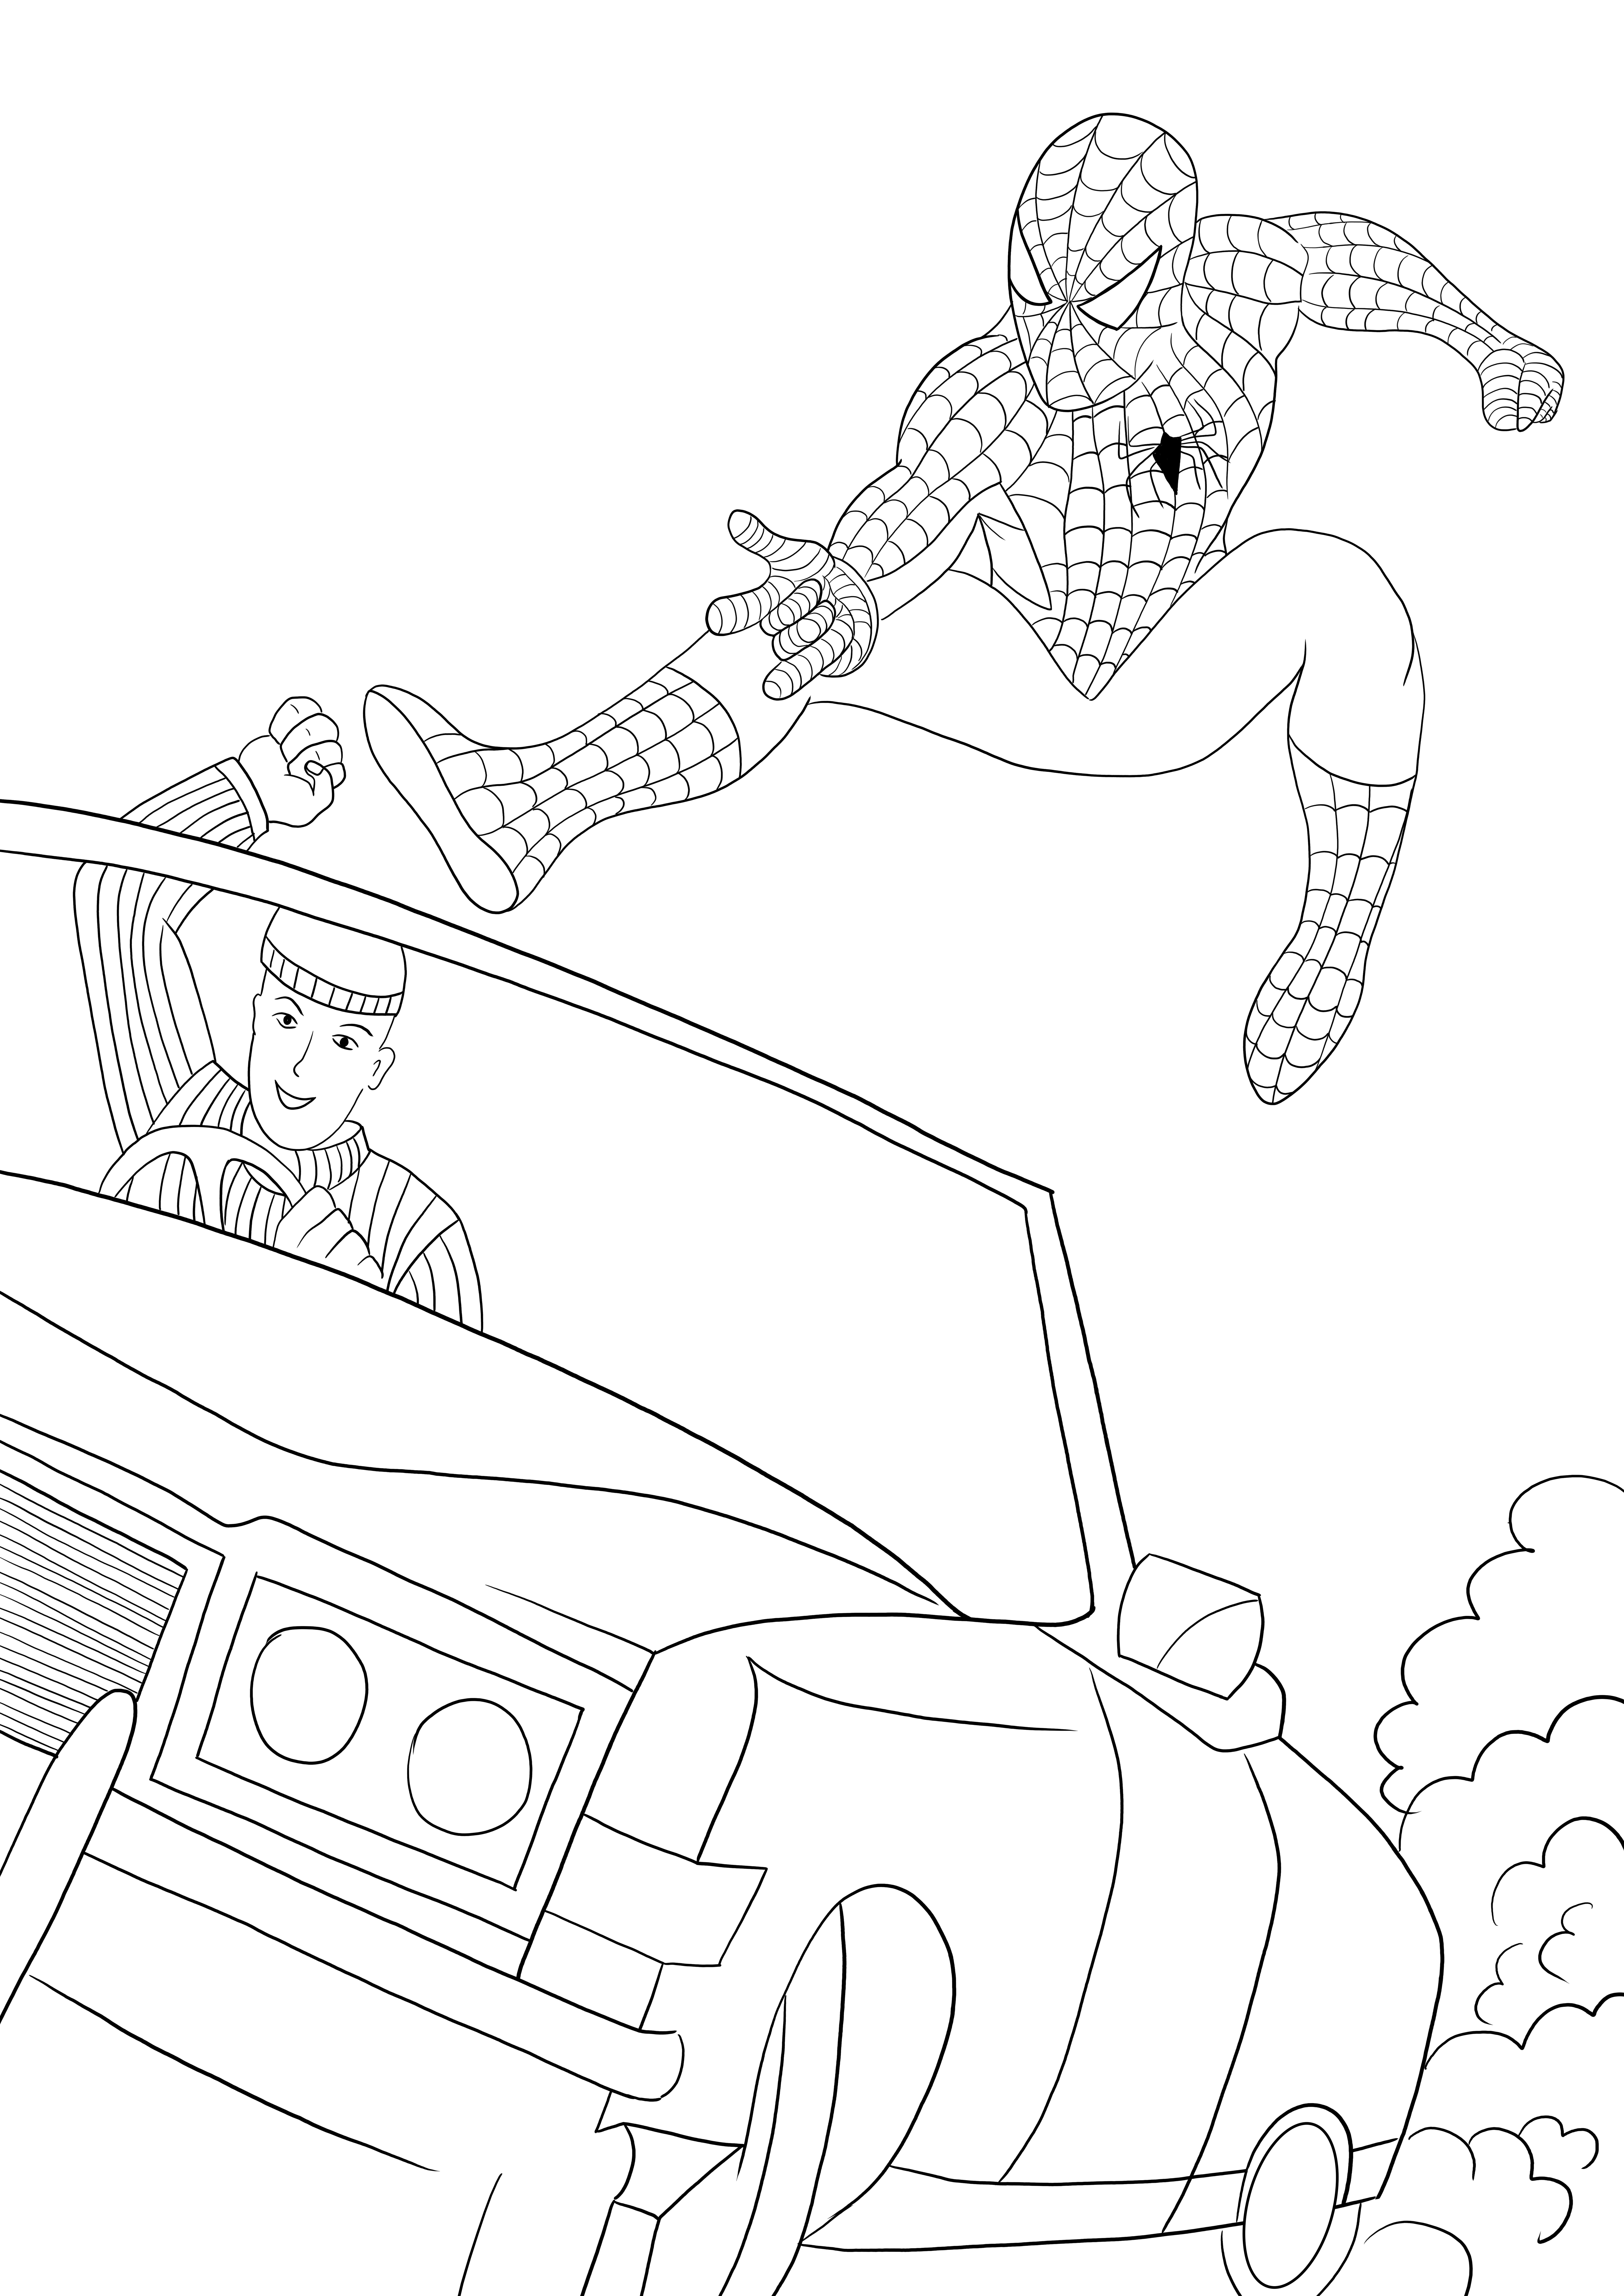 Spider-Man łapie złodzieja proste kolorowanie i drukowanie za darmo